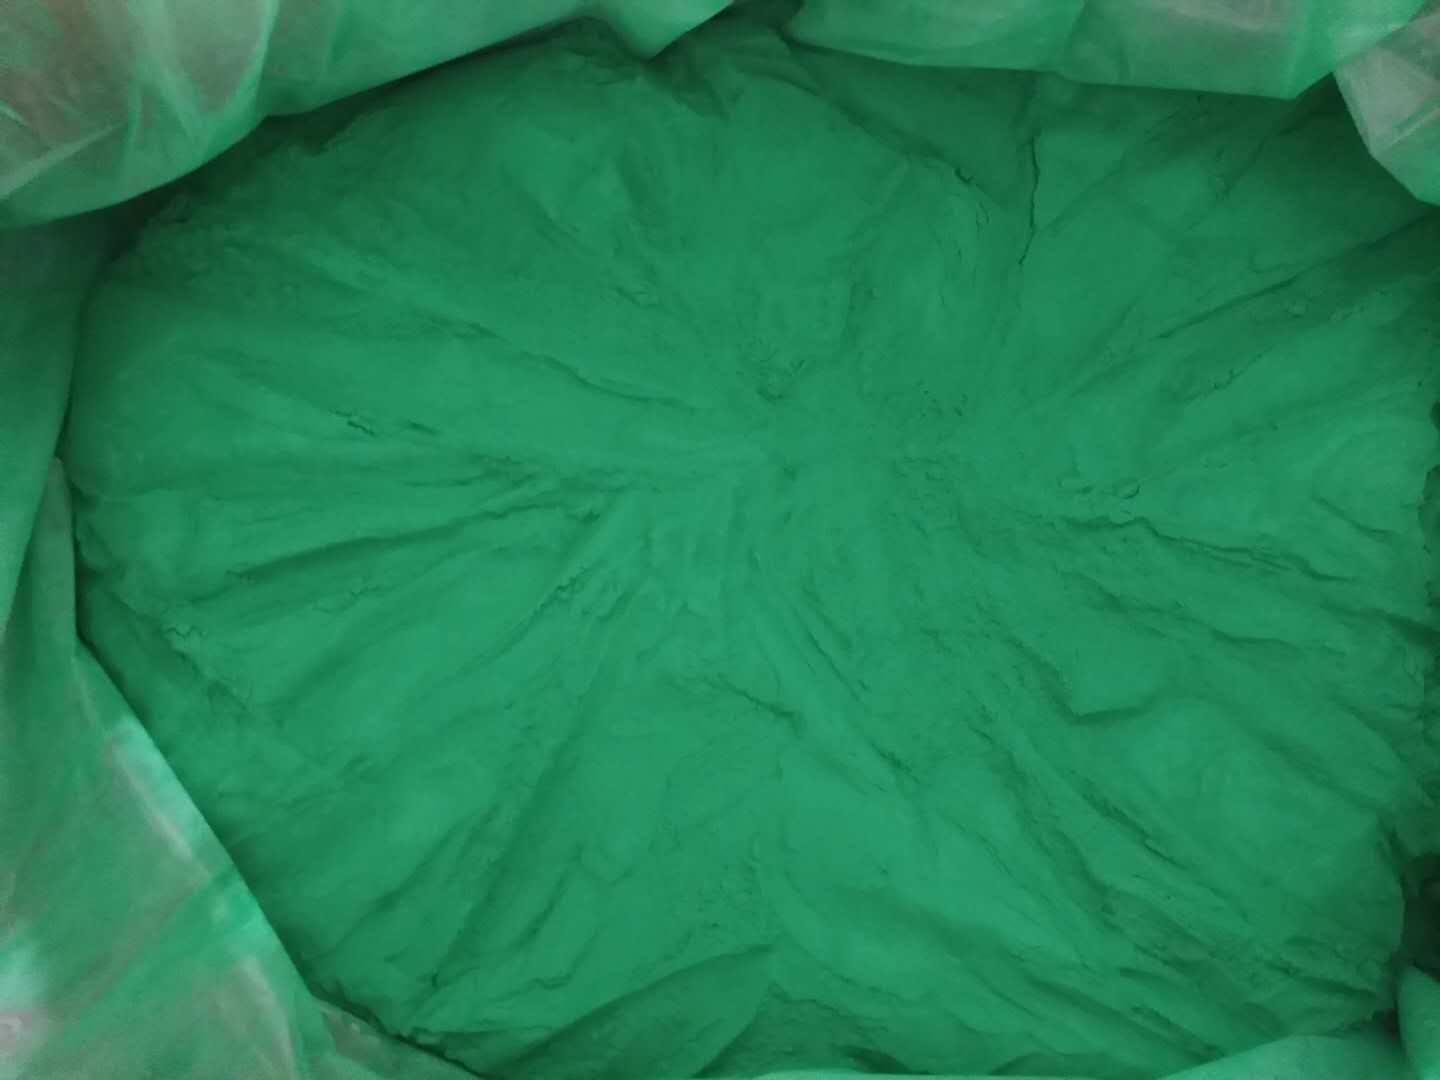  Pintura en polvo Epoxi poliéster color verde brillo/ mate Pintura En Polvo 